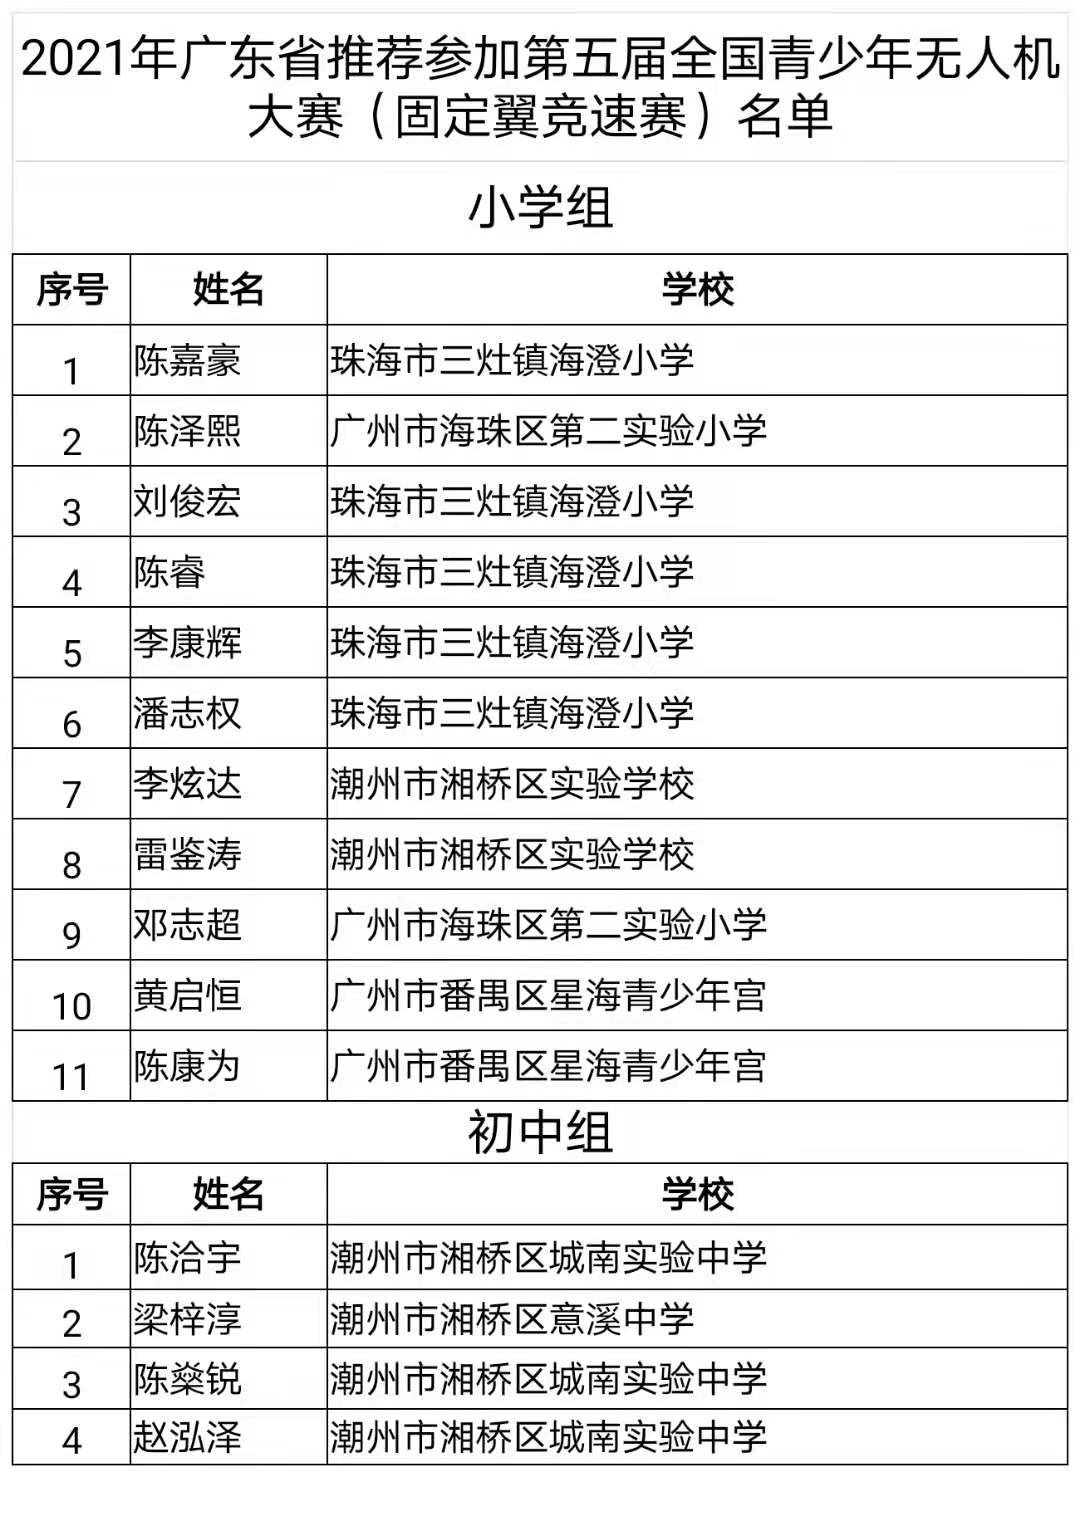 广东省航空学会推荐名单22-0.jpg